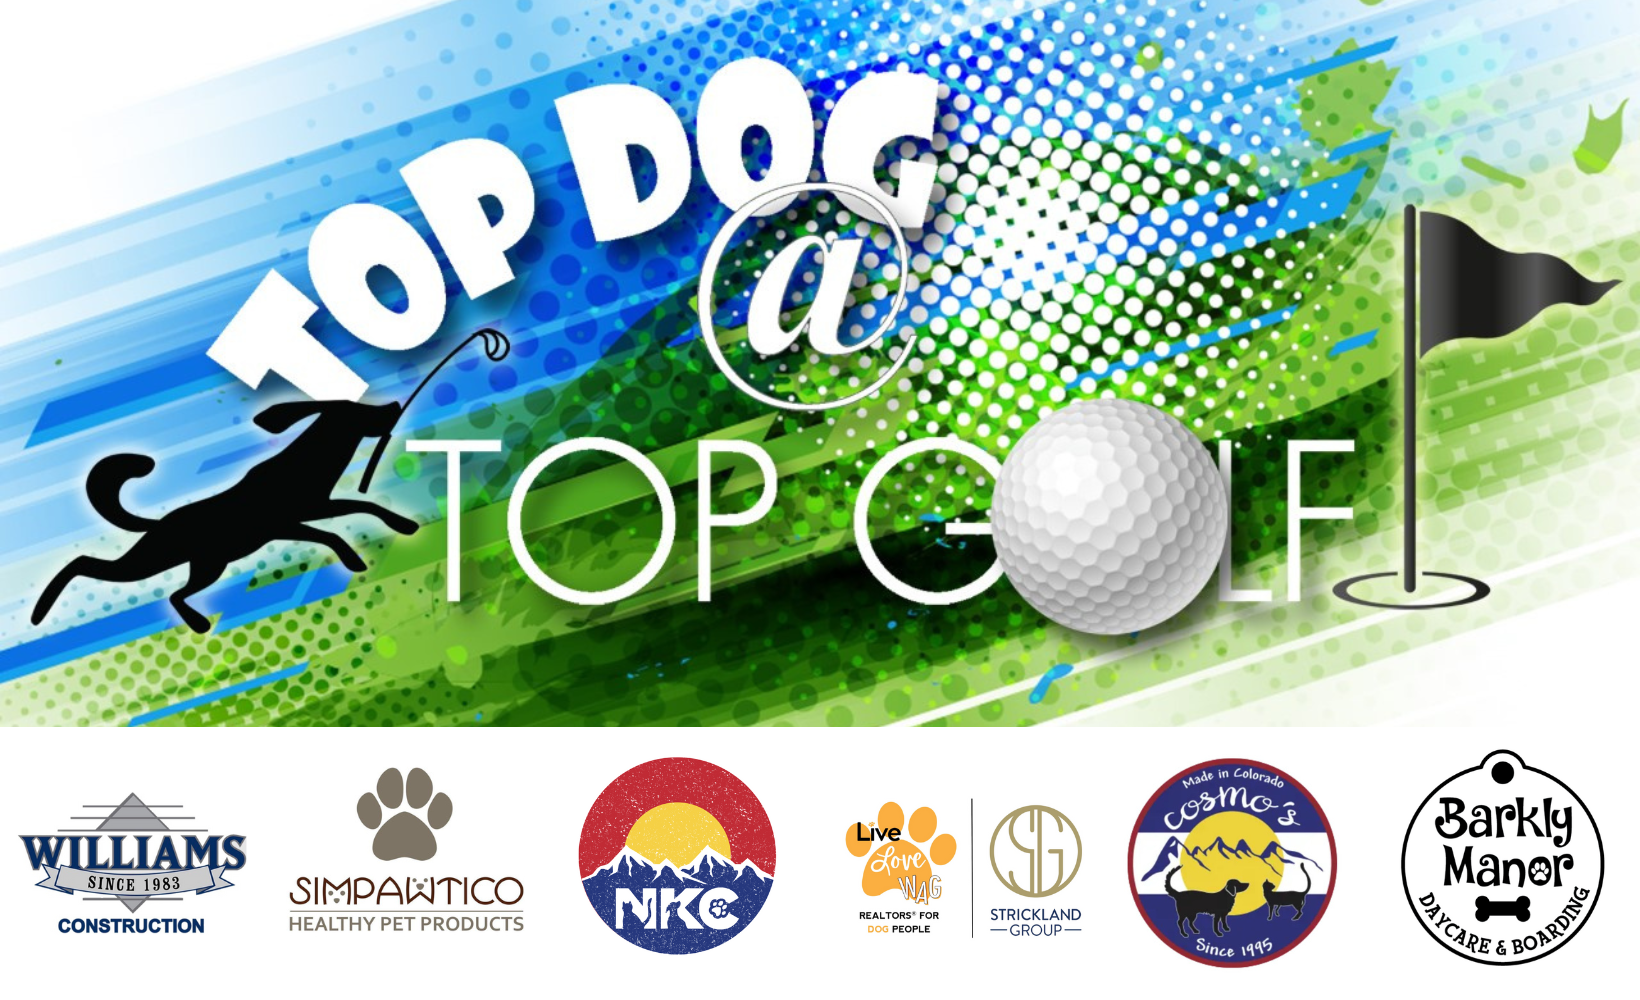 
Top Dog @ Top Golf